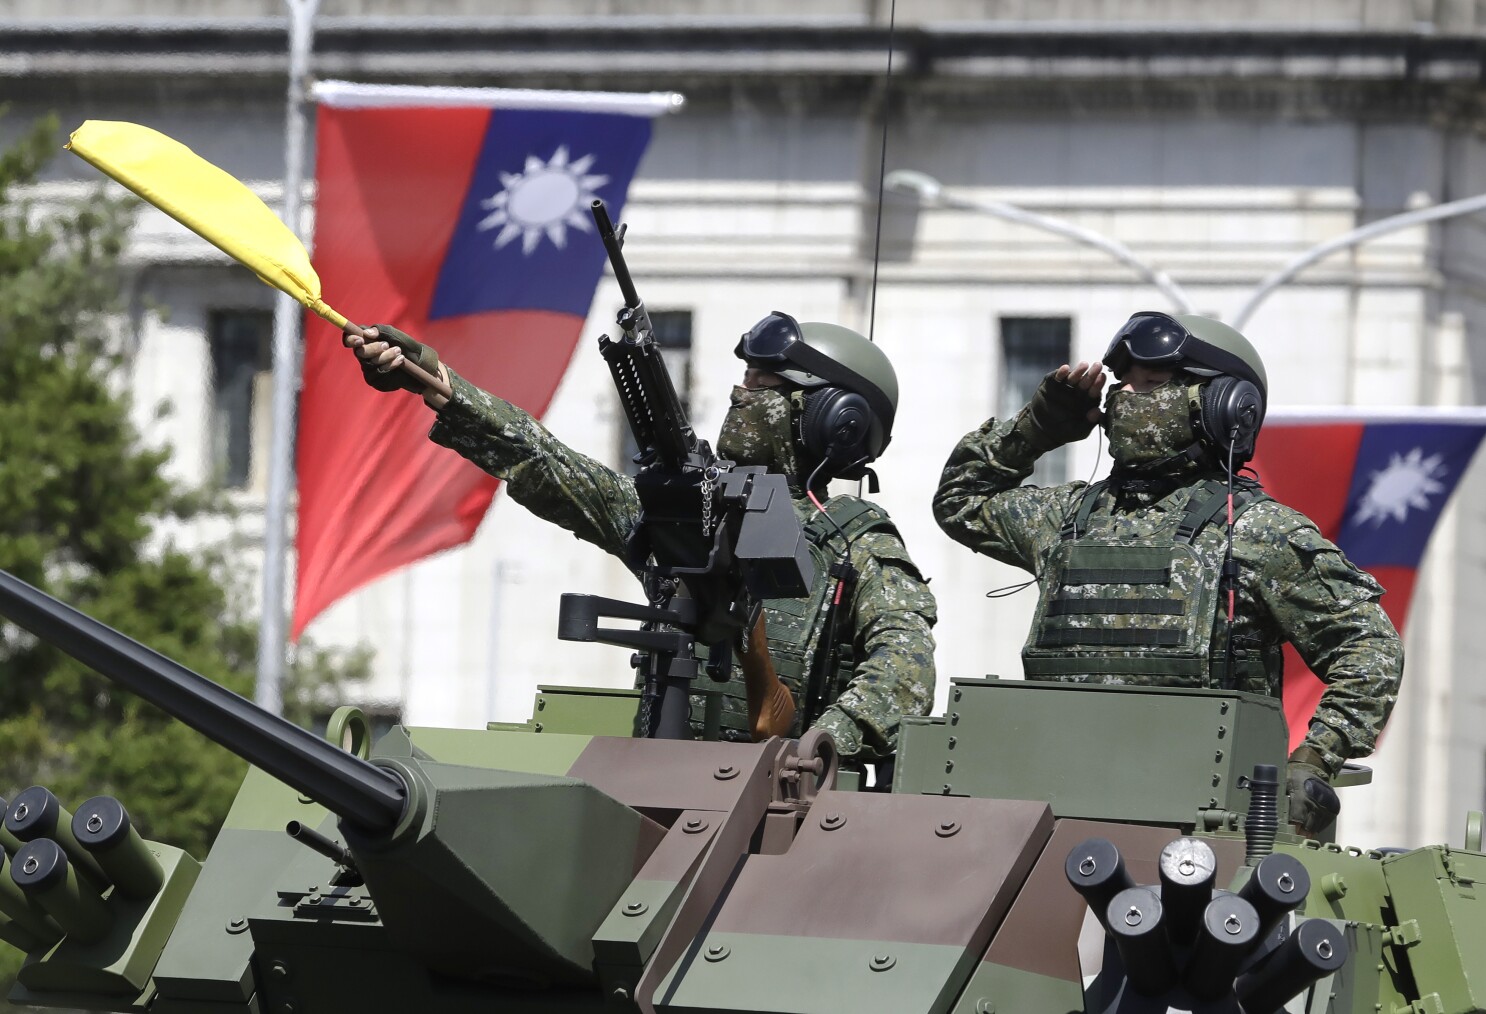 Aumentan temores de conflicto entre China y EEUU por Taiwán - Los Angeles Times